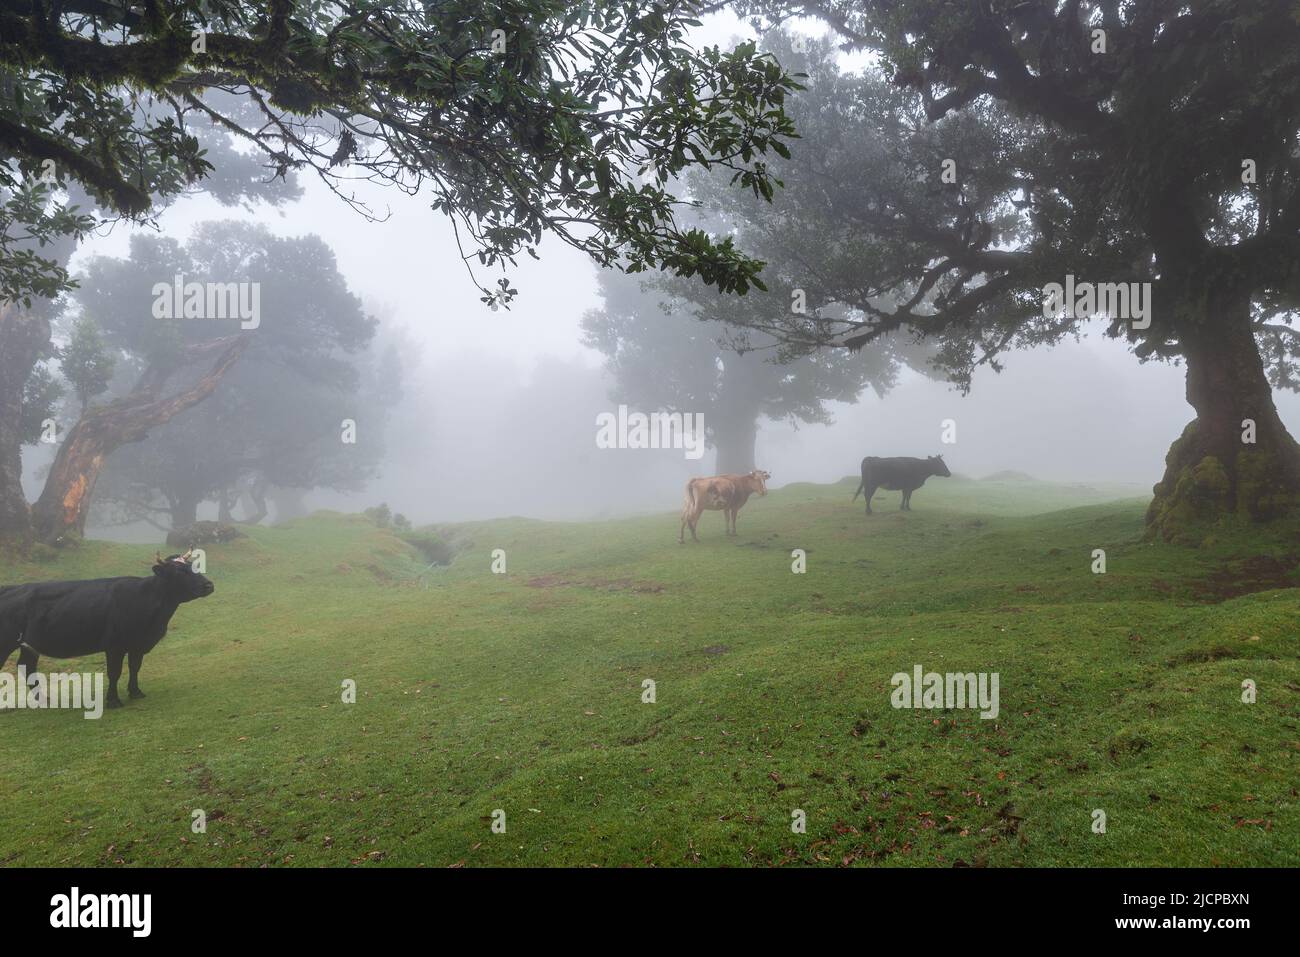 MistyMorning avec des vaches nourrissant et des arbres de la forêt Laurisilva Banque D'Images